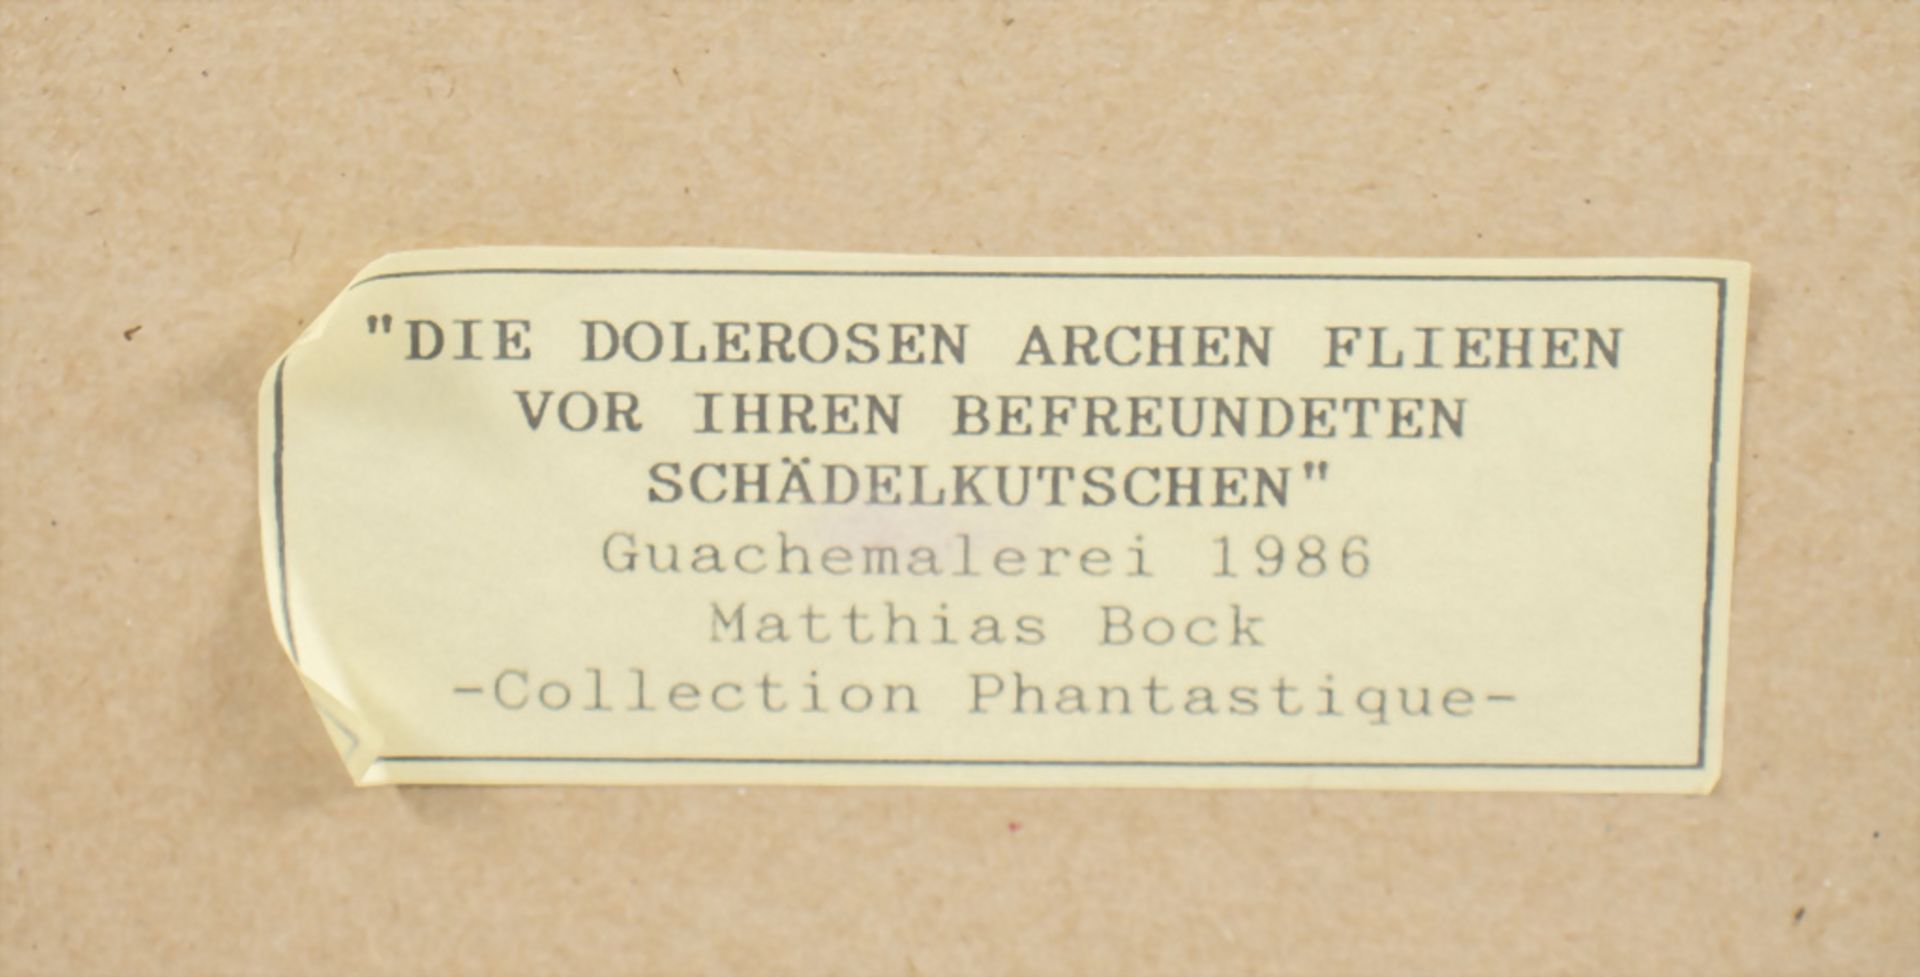 Matthias Bock, 'DIE DOLEROSEN ARCHEN FLIEHEN VOR IHREN BEFREUNDETEN SCHÄDELKUTSCHEN', 1986 - Image 4 of 7